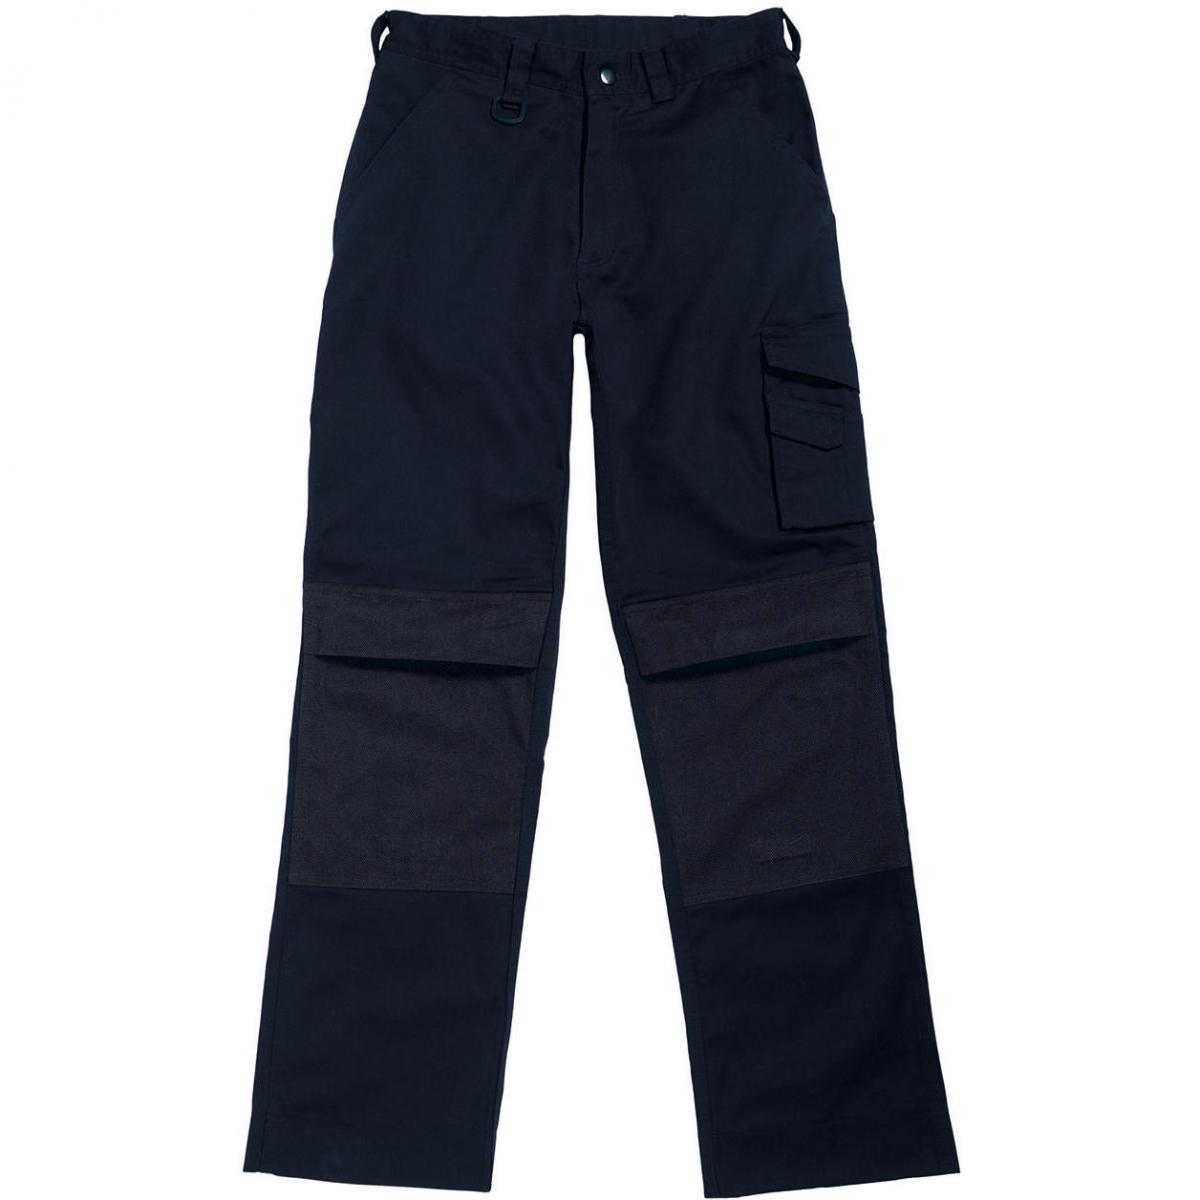 Hersteller: B&C Pro Collection Herstellernummer: BUC50 Artikelbezeichnung: Basic Workwear Trousers Einschubtaschen für Kniepolster Farbe: Navy